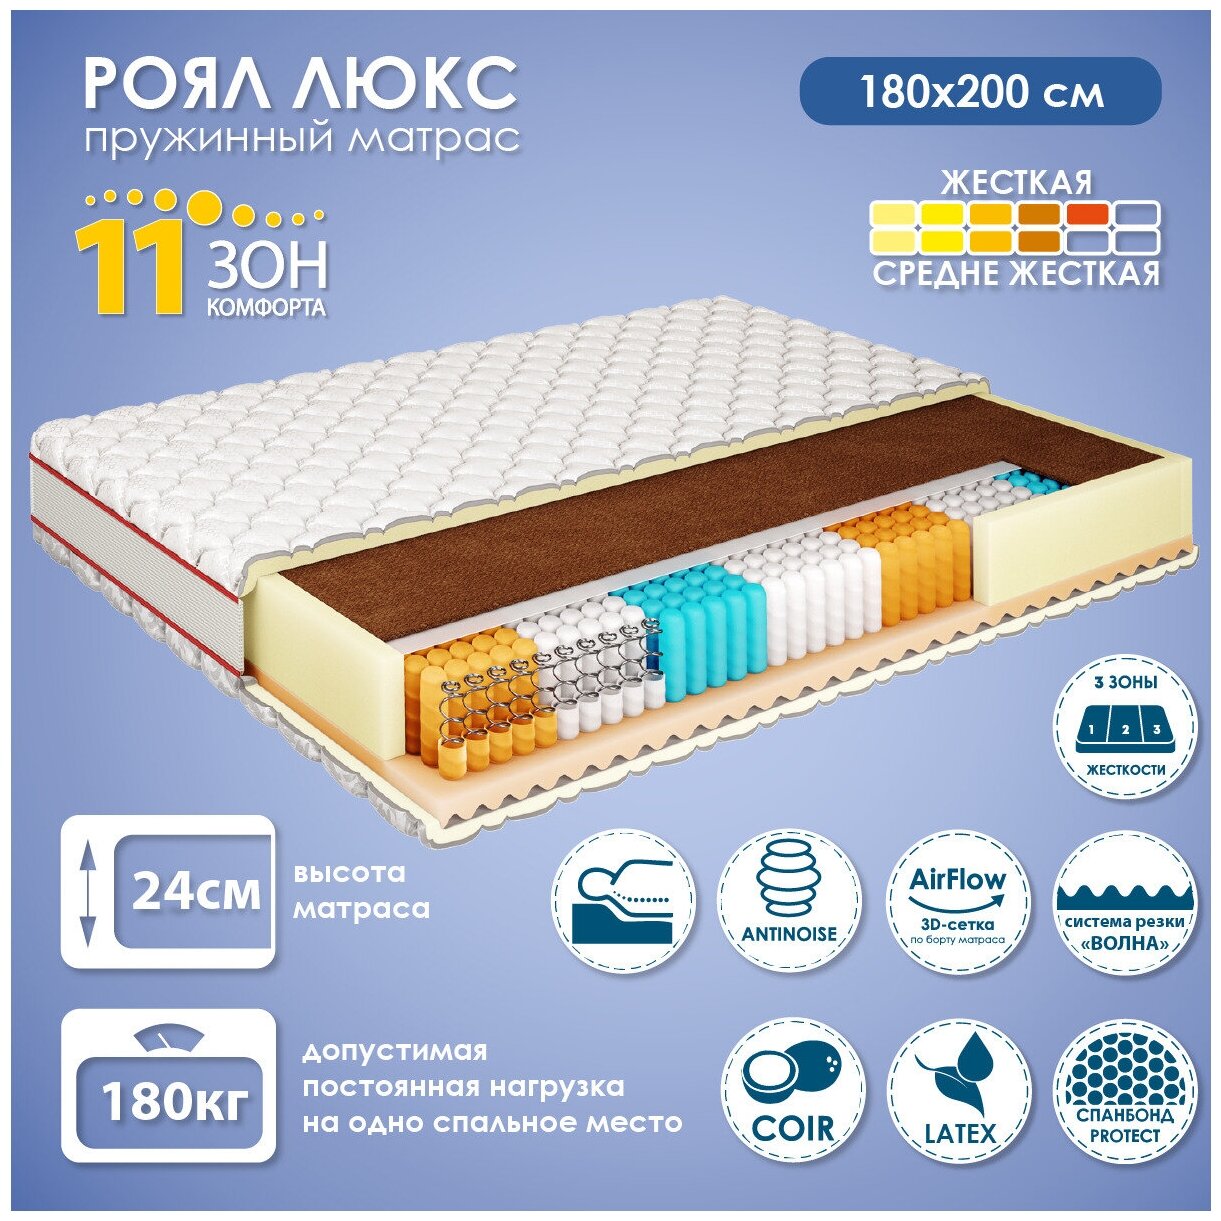 Матрас для кровати 180х200 см Роял Люкс, независимый пружинный блок, 11 зон комфорта, 24 см высота, в развернутом виде, АМИ мебель, Беларусь